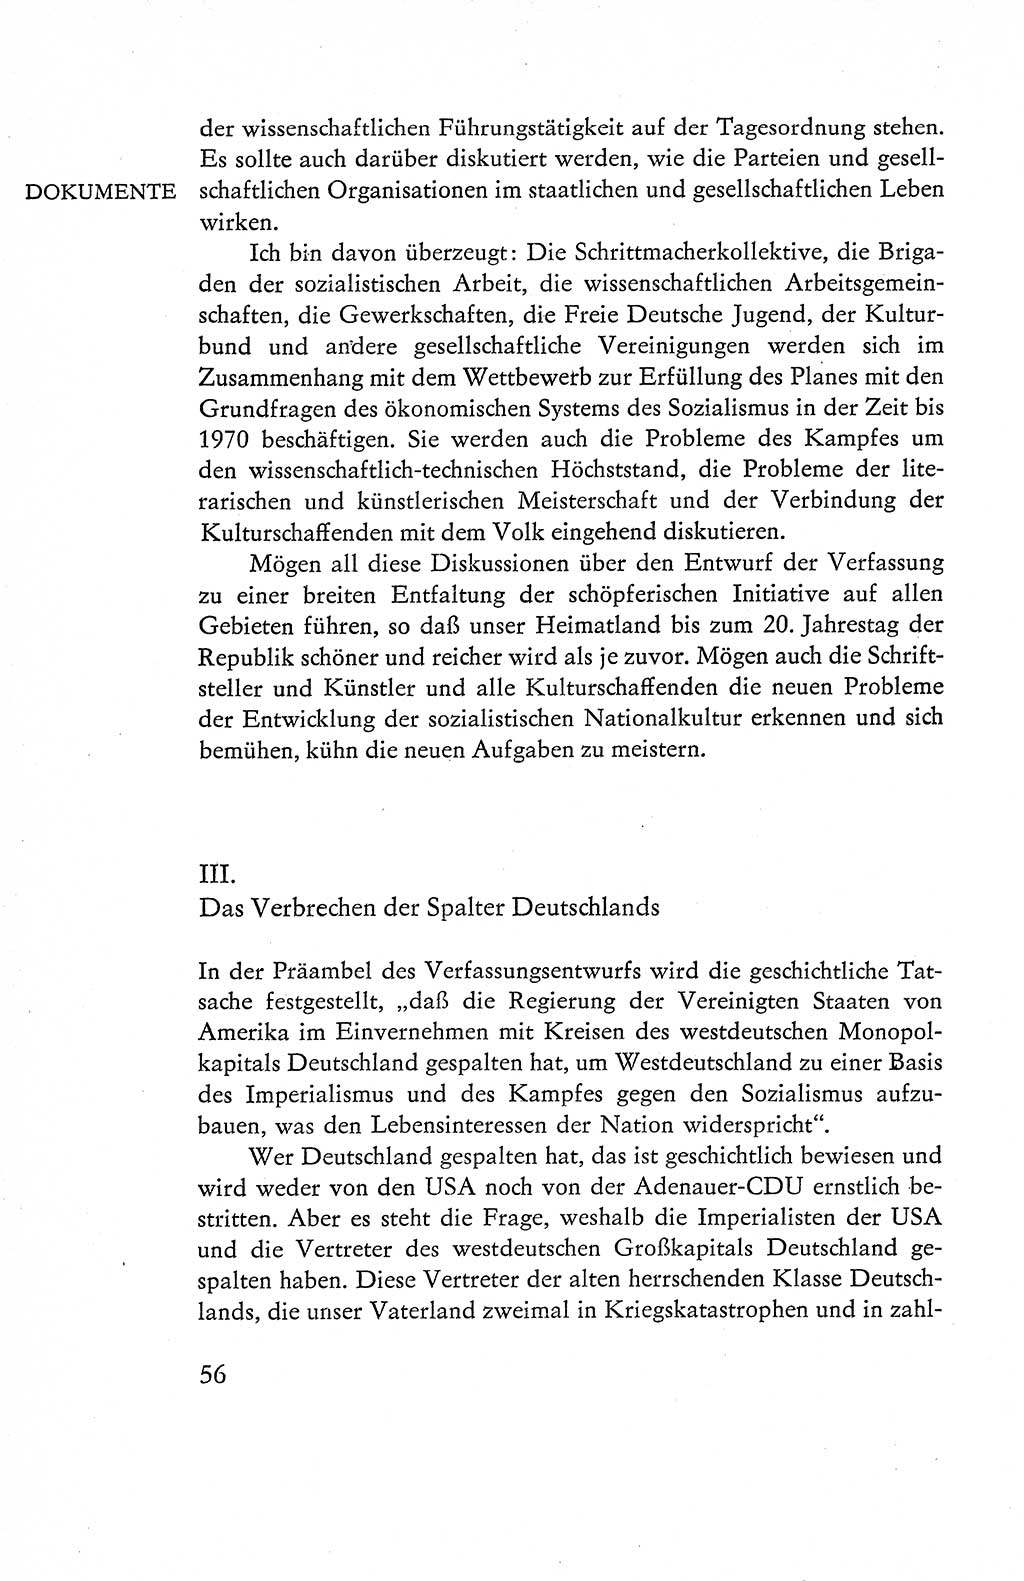 Verfassung der Deutschen Demokratischen Republik (DDR), Dokumente, Kommentar 1969, Band 1, Seite 56 (Verf. DDR Dok. Komm. 1969, Bd. 1, S. 56)